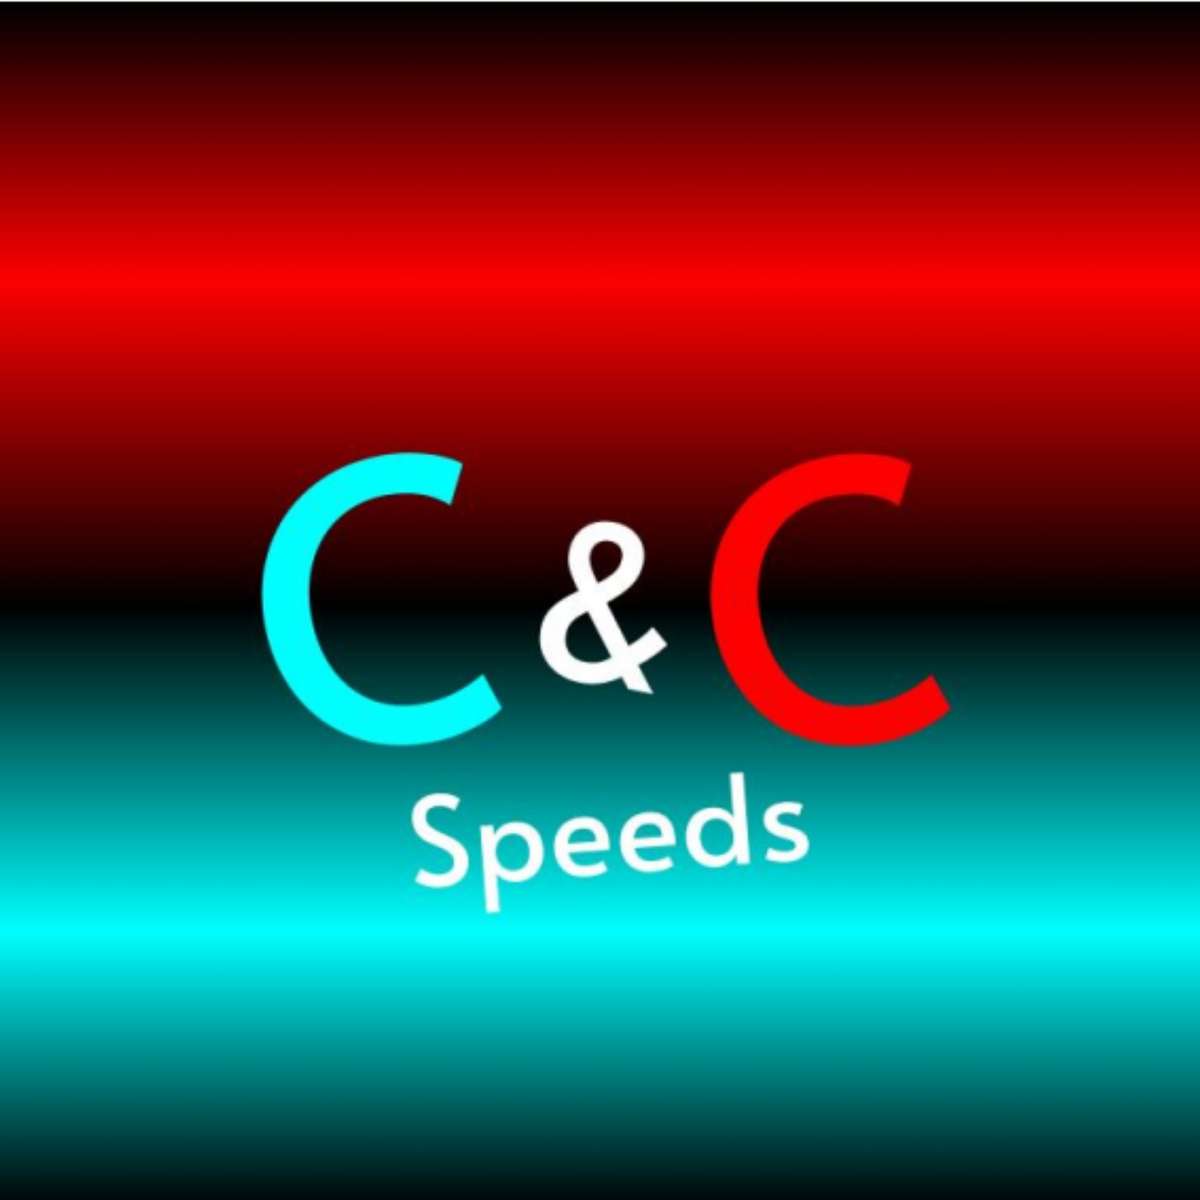 C&C Speeds online puzzle